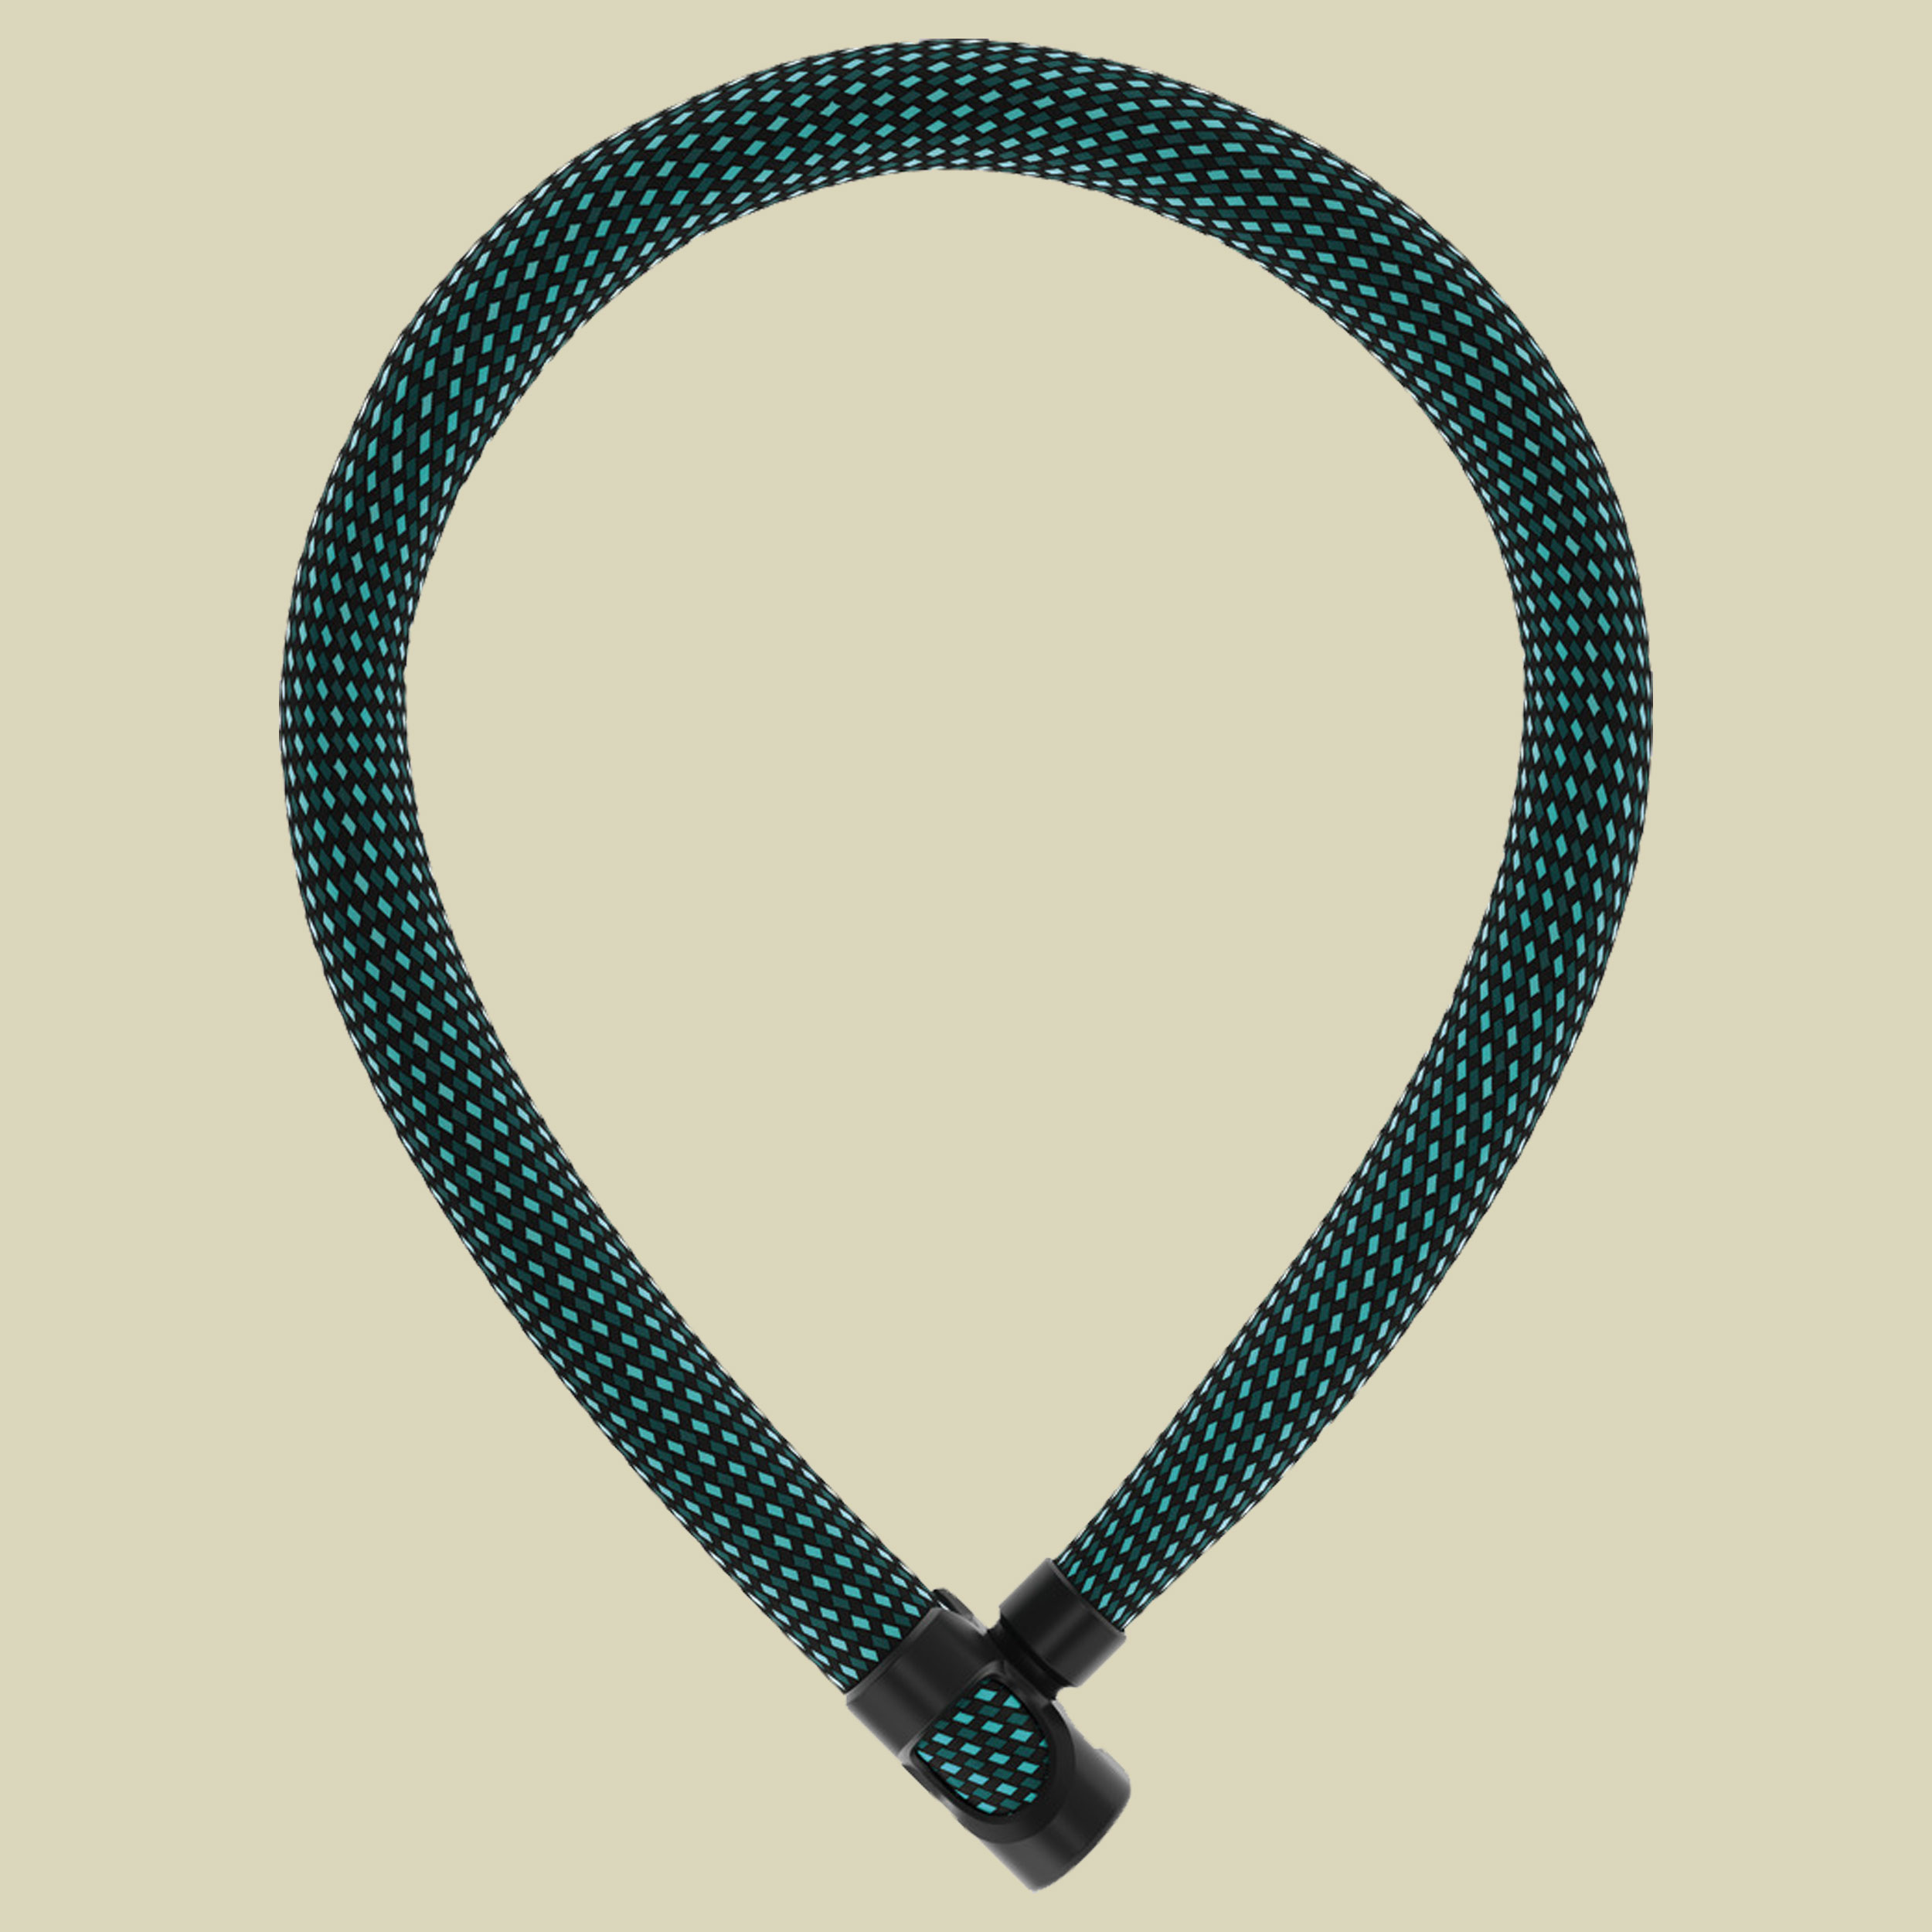 Ivera Chain 7210/110 Länge 110 cm Farbe diving blue